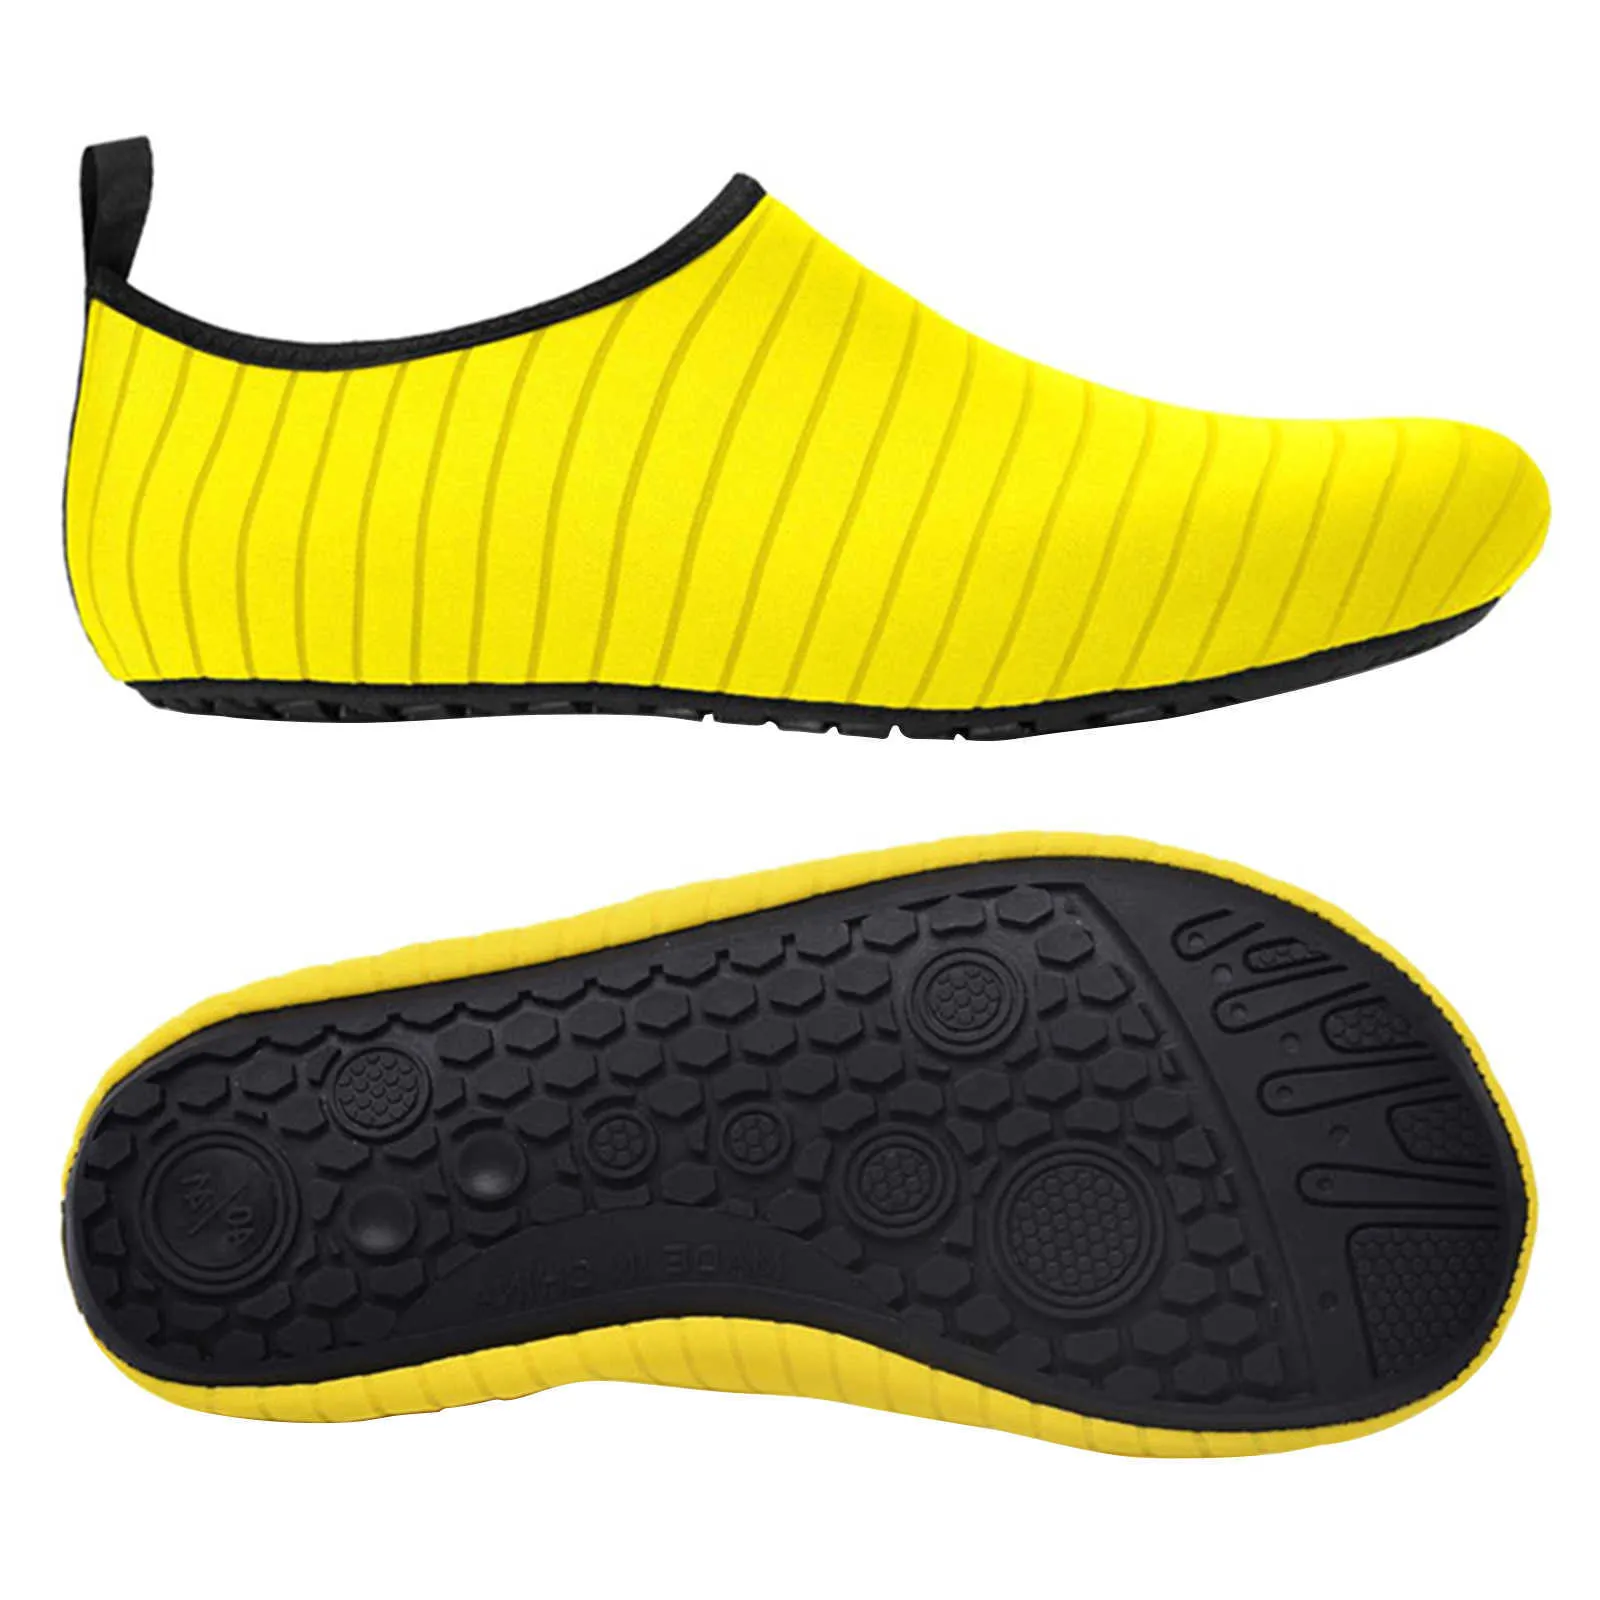 Sapatos de água anti-deslizante Barefoot Rebar-seco Absorção de choque Aqua Meias Slip-on Mulheres Homens Esportes Praia Swim Surf Yoga Exercício Y0714